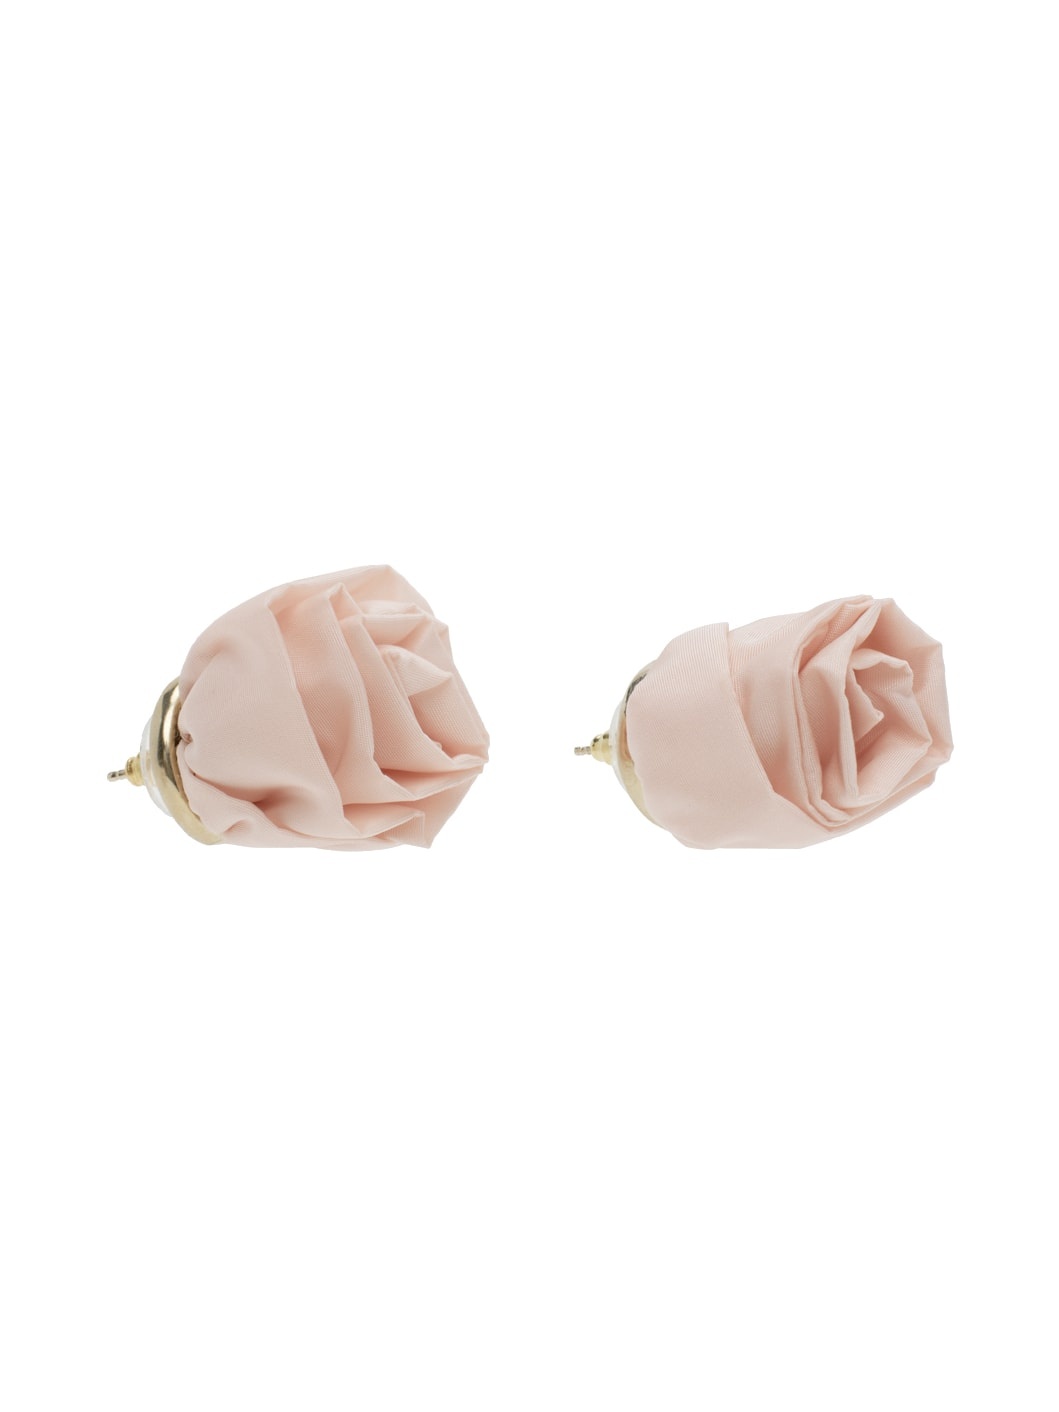 Pink Rose Stud Earrings - 2